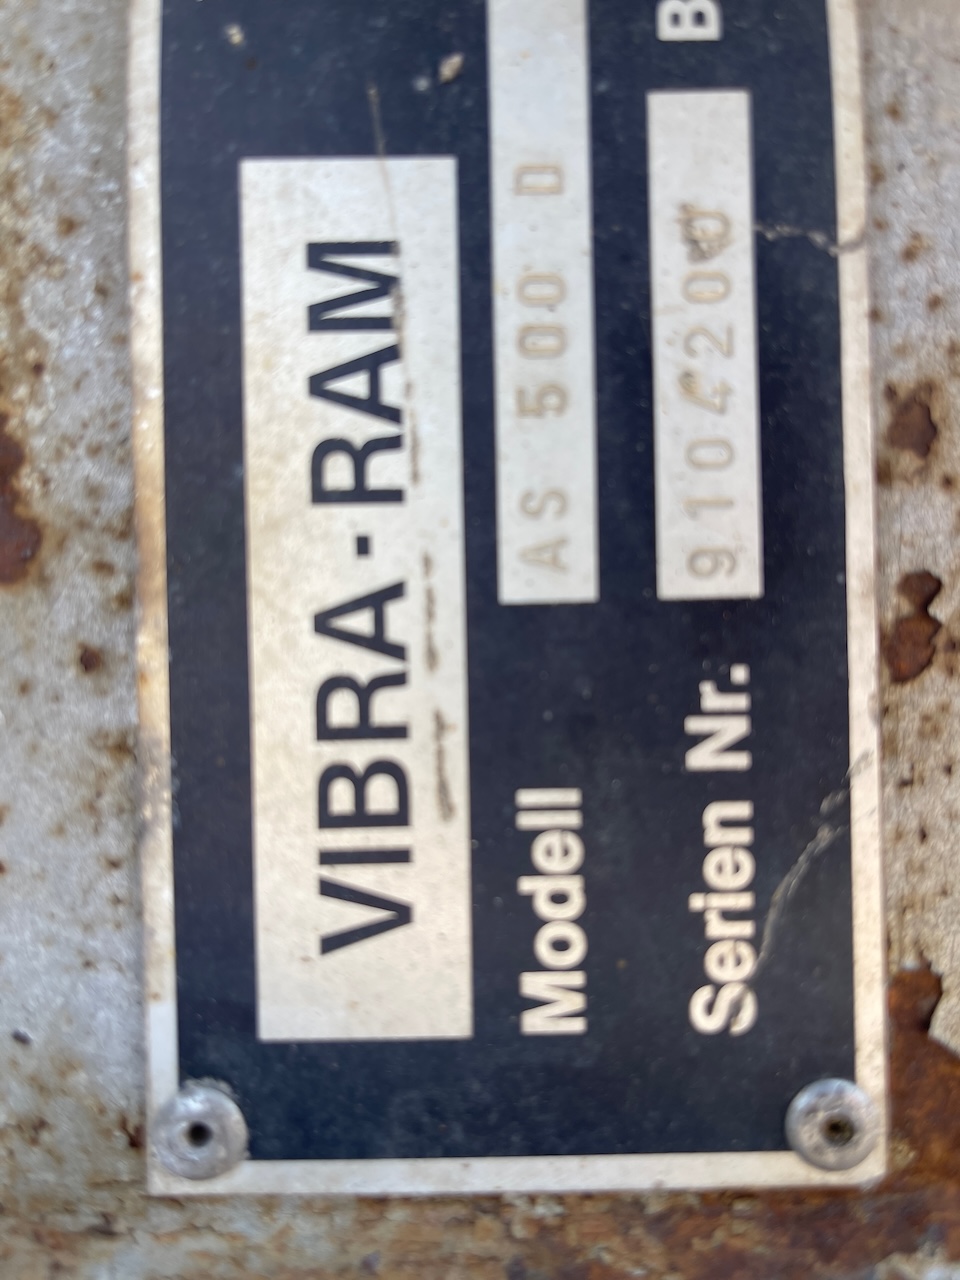 Vibra ram Metaal schaar AS500D Lehnhoff aansl